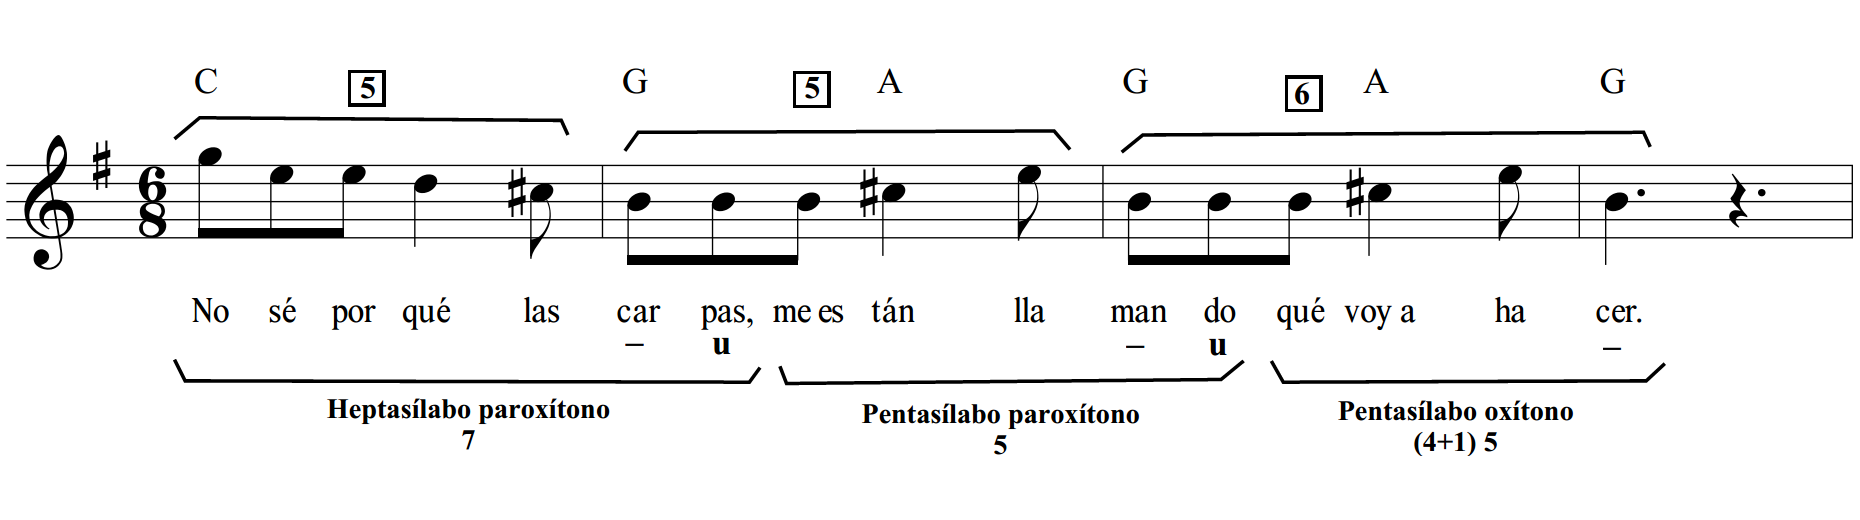 Melodía de
«Zamba de enamorar». Transcripción de versión de Los Chalchaleros (1972).